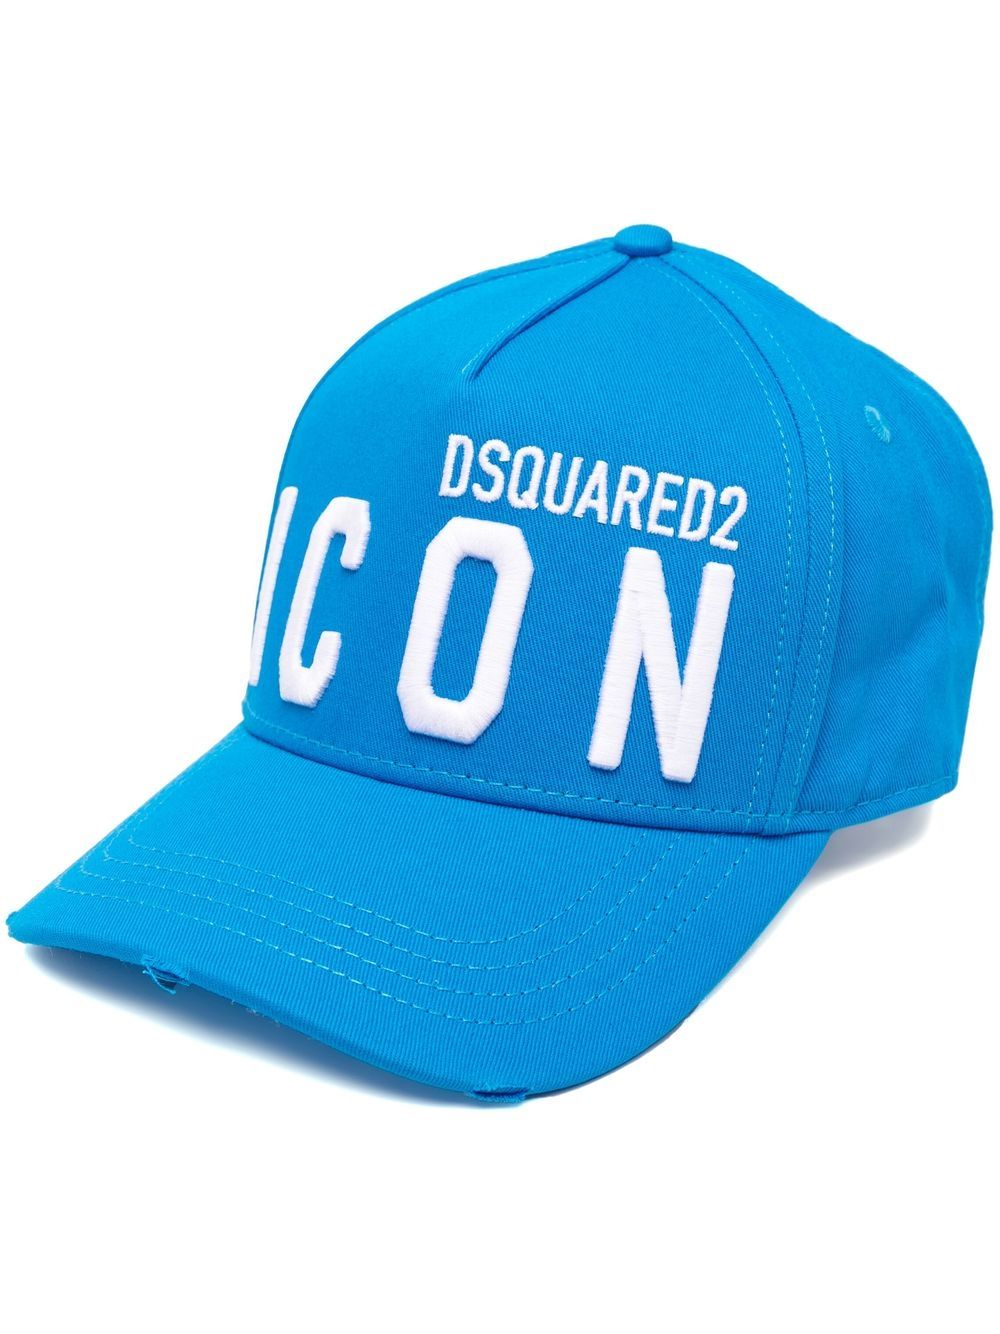 Dsquared2 BCM0412 ICON Baseball Cap - M2646 Blue/White - Escape Menswear